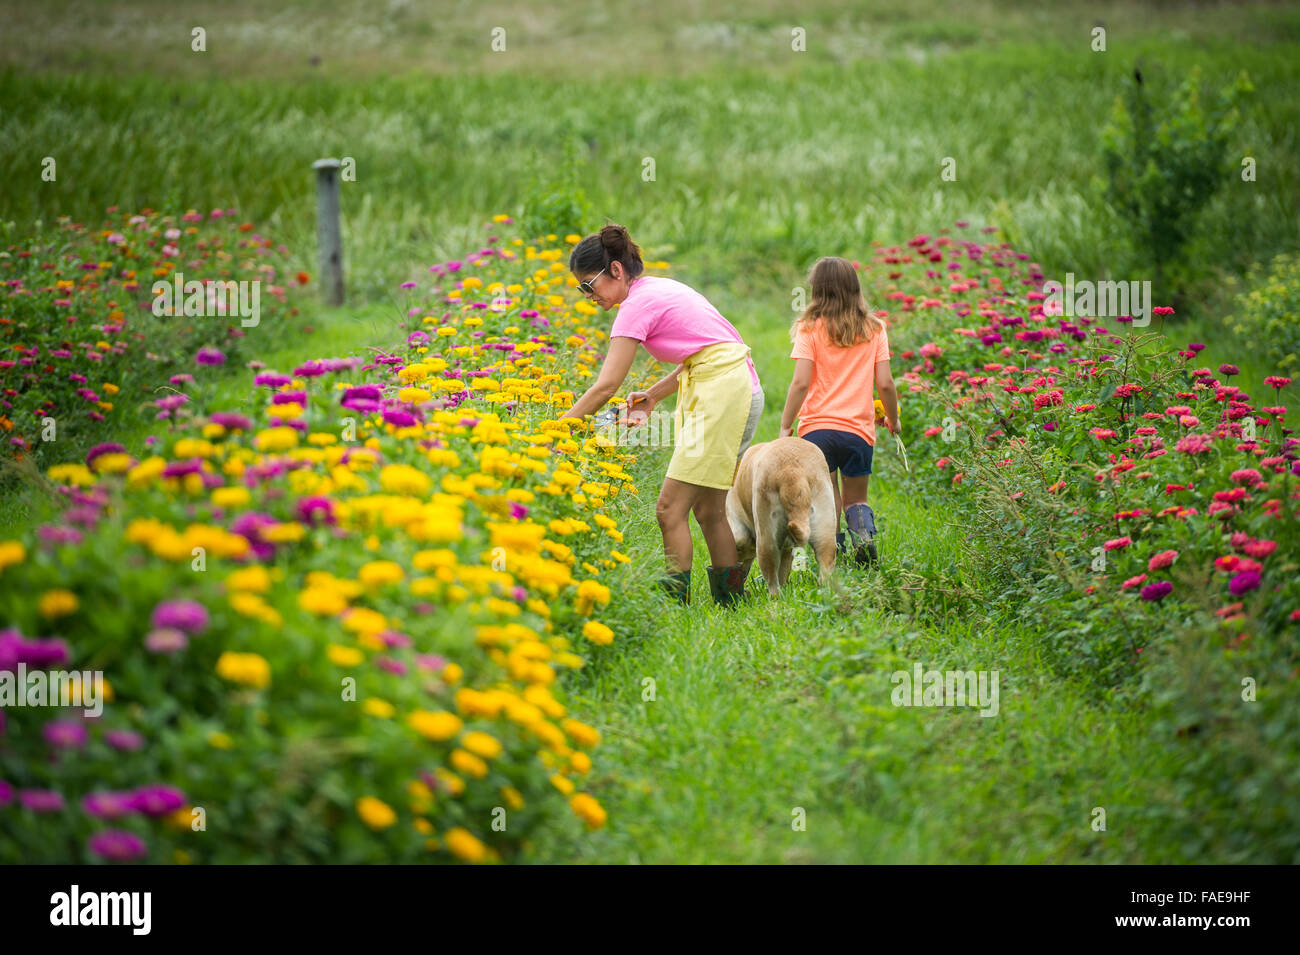 Frau und Tochter Blumenpflücken in einem Feld Stockfoto